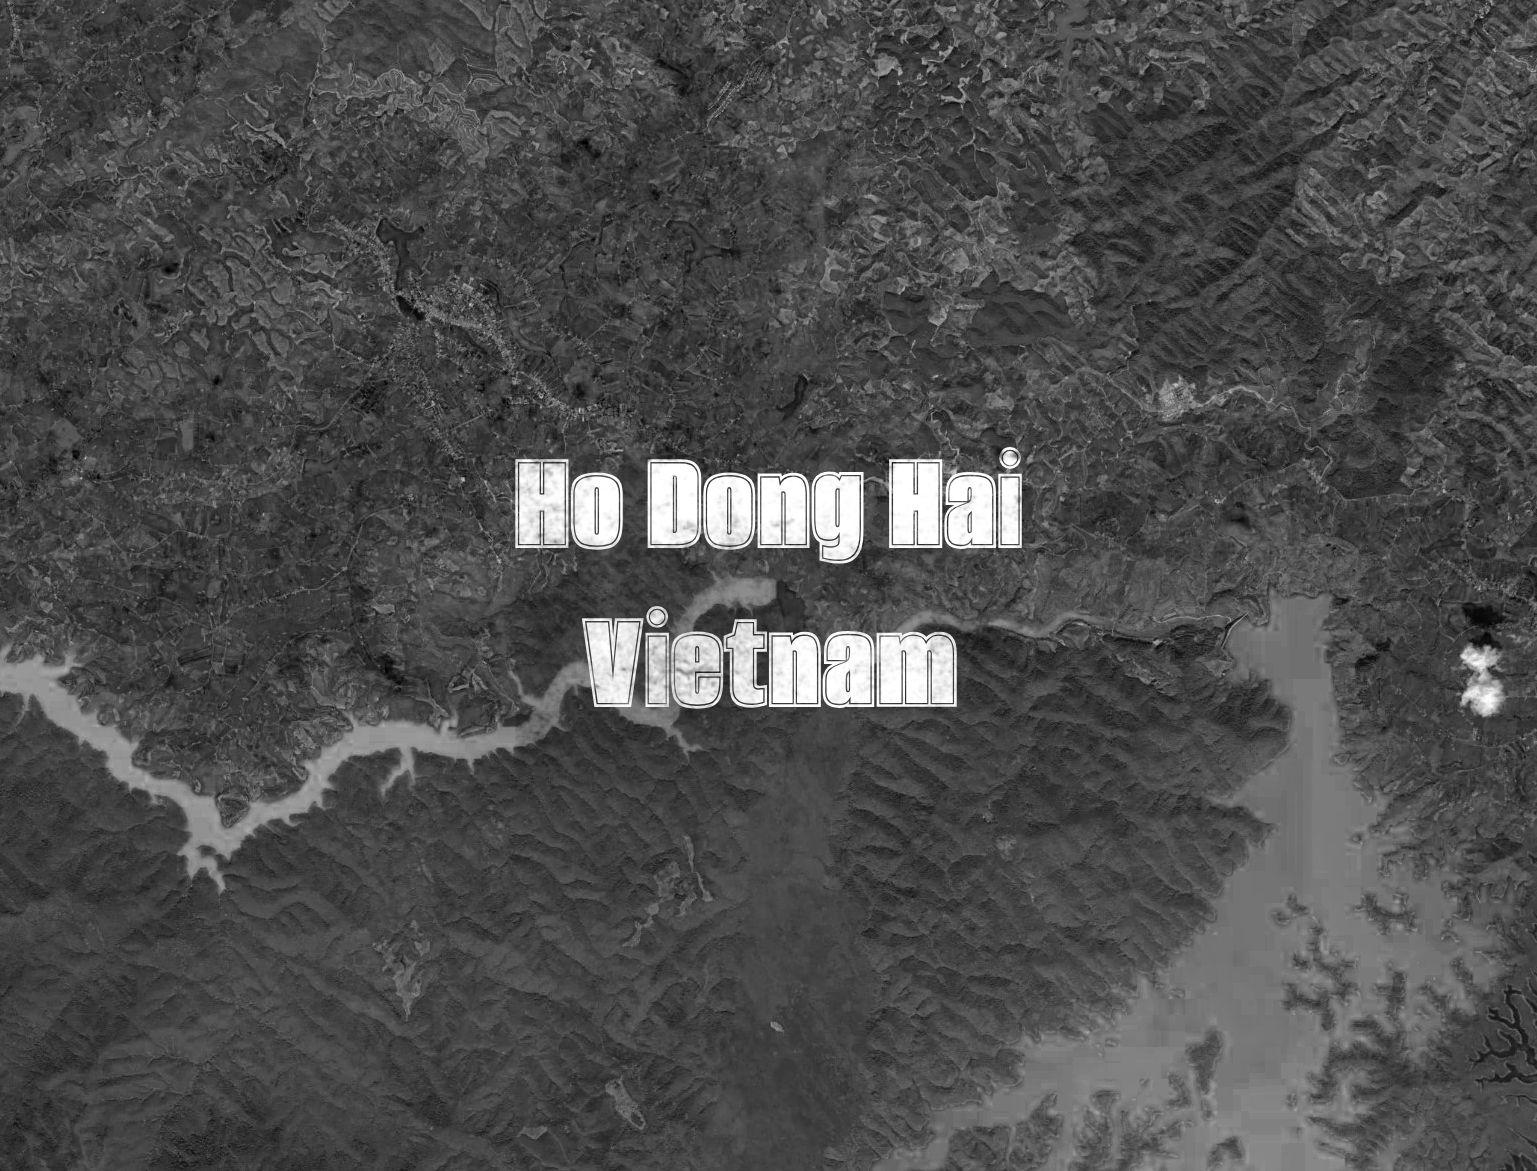 HoDongHai Vietnam OnHiatus